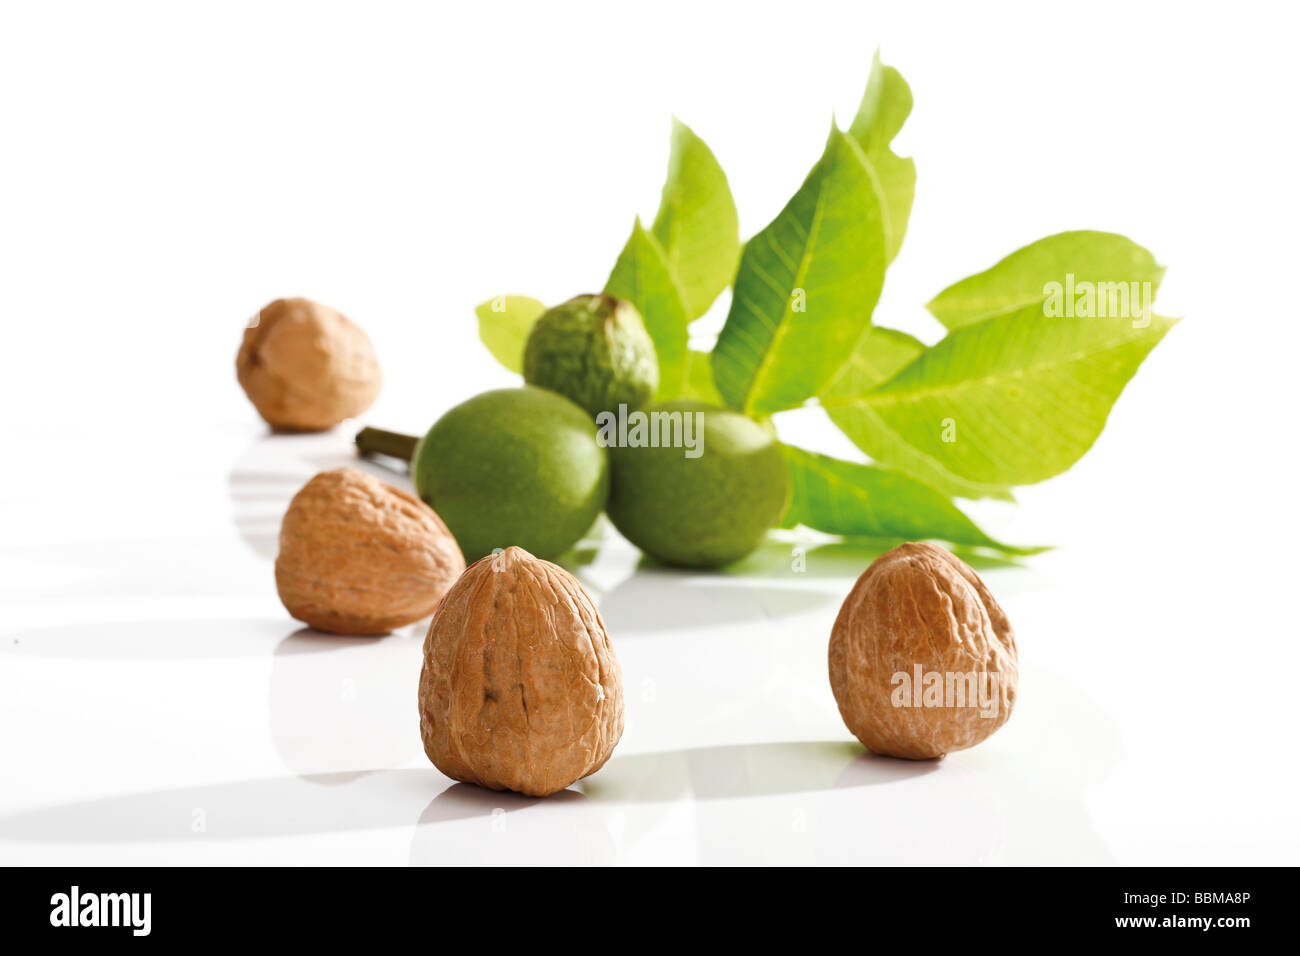 Walnuts, Walnut leaves (Juglans regia) Stock Photo